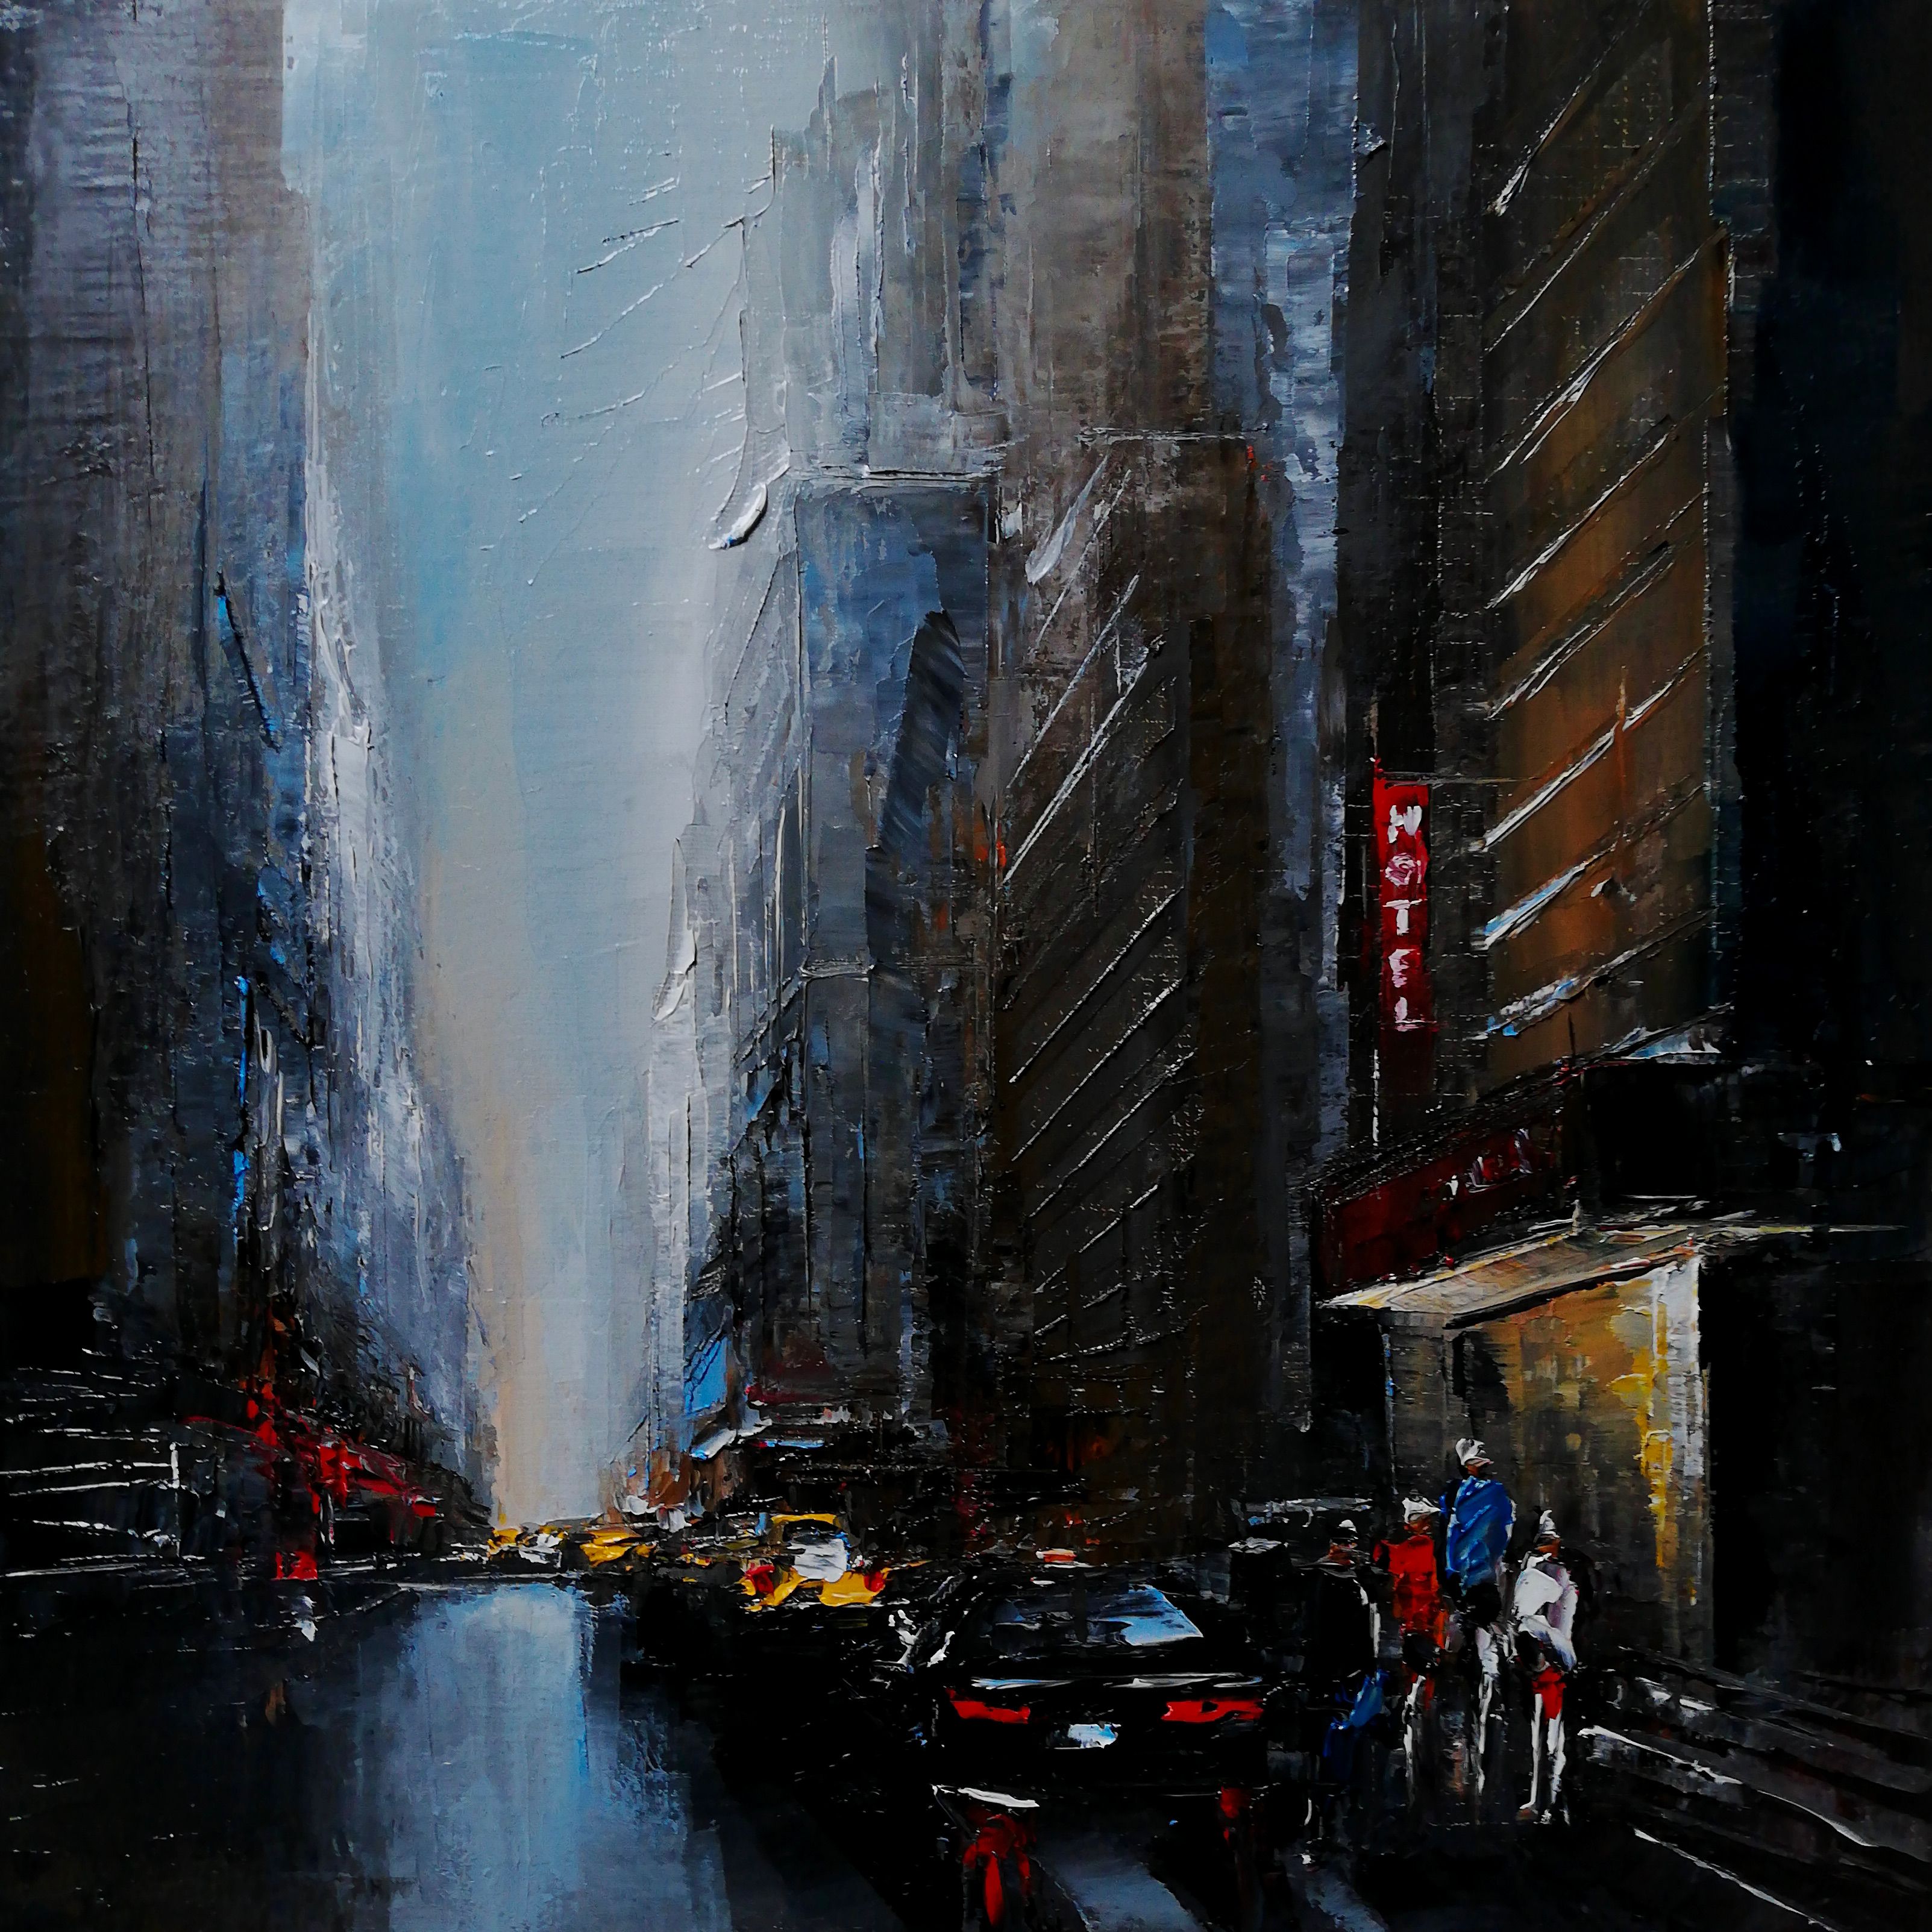 菲利普-梅斯林的 "曼哈顿交通Huile sur lin "油画，是一幅曼哈顿街景的具象彩色油画。